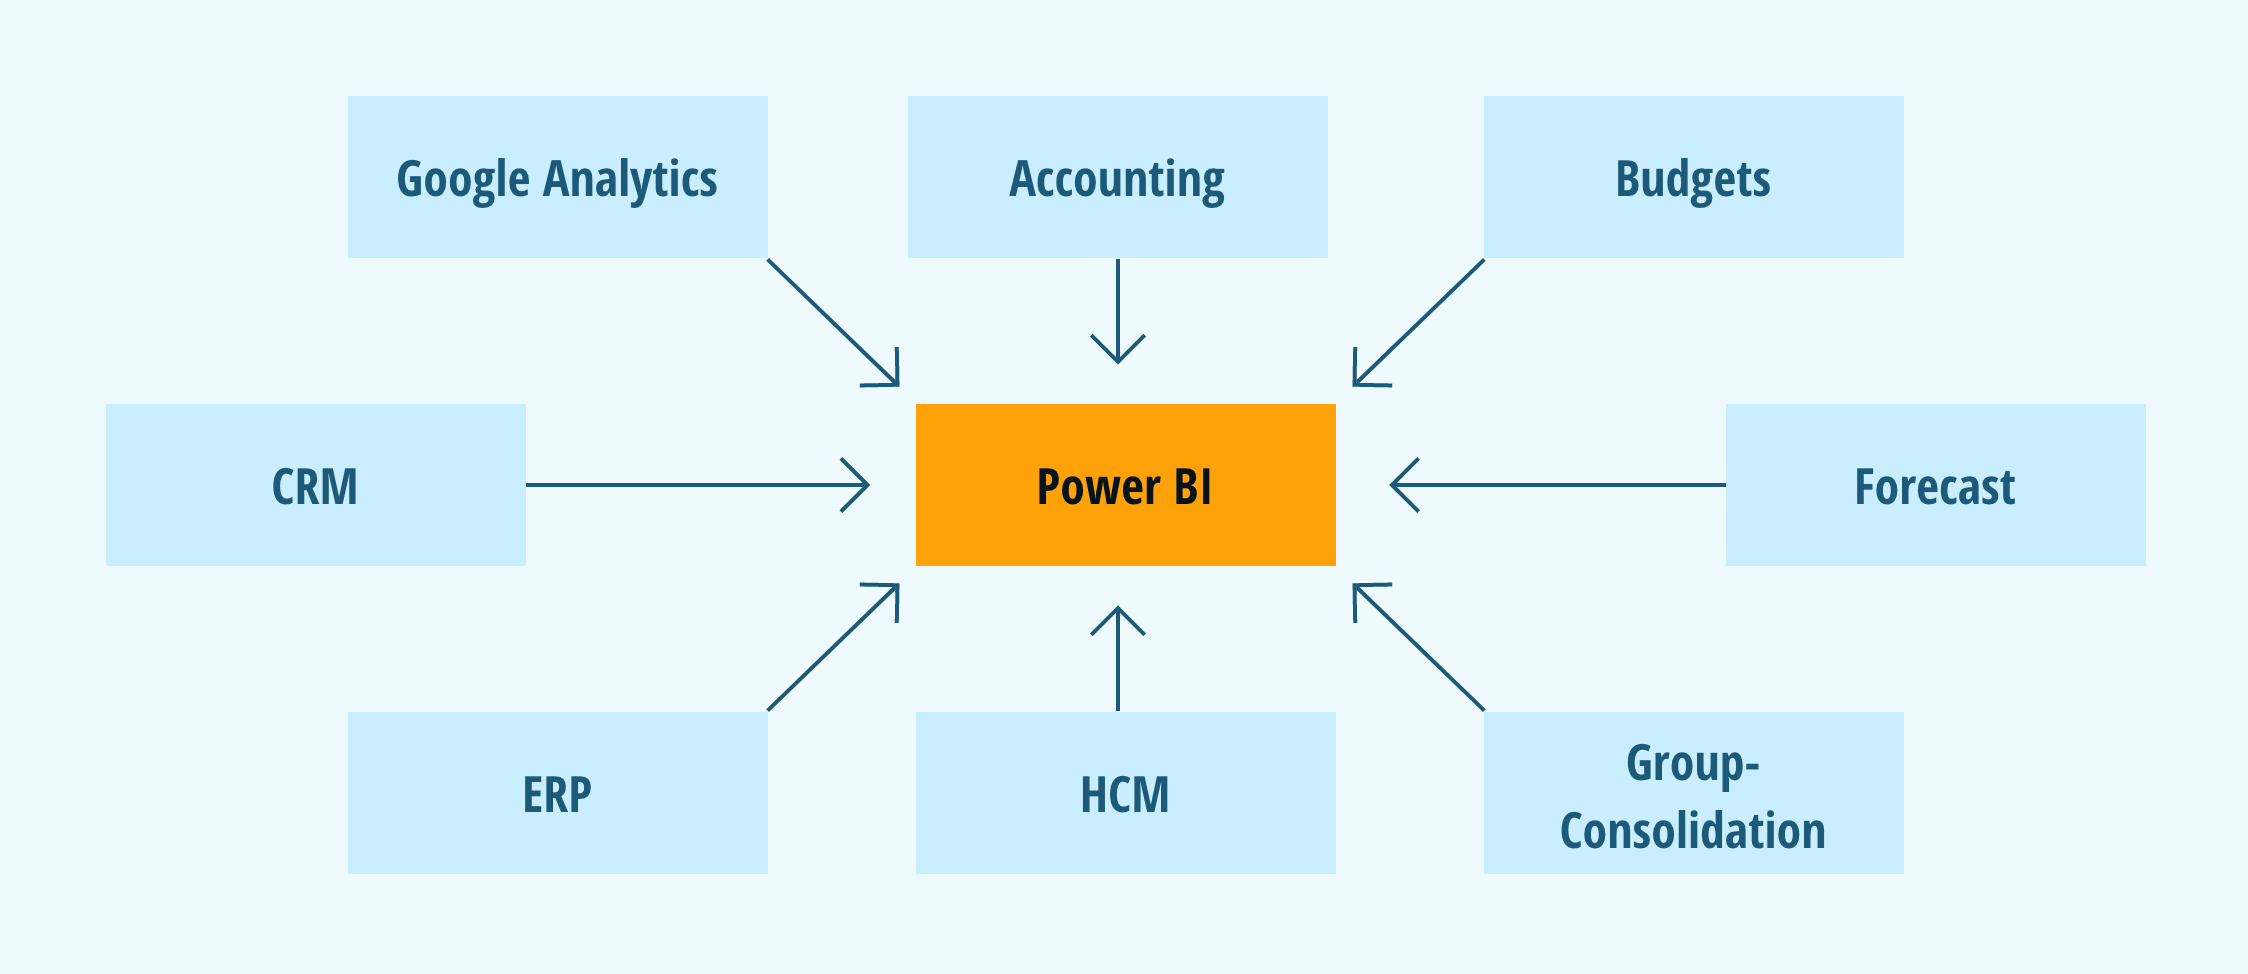 Grafik auf der gezeigt wird wie Budgets, Accounting, google Analytics, CRM, ERP, HCM, Group Consolidation und Forecast in Power BI zusammenlaufen